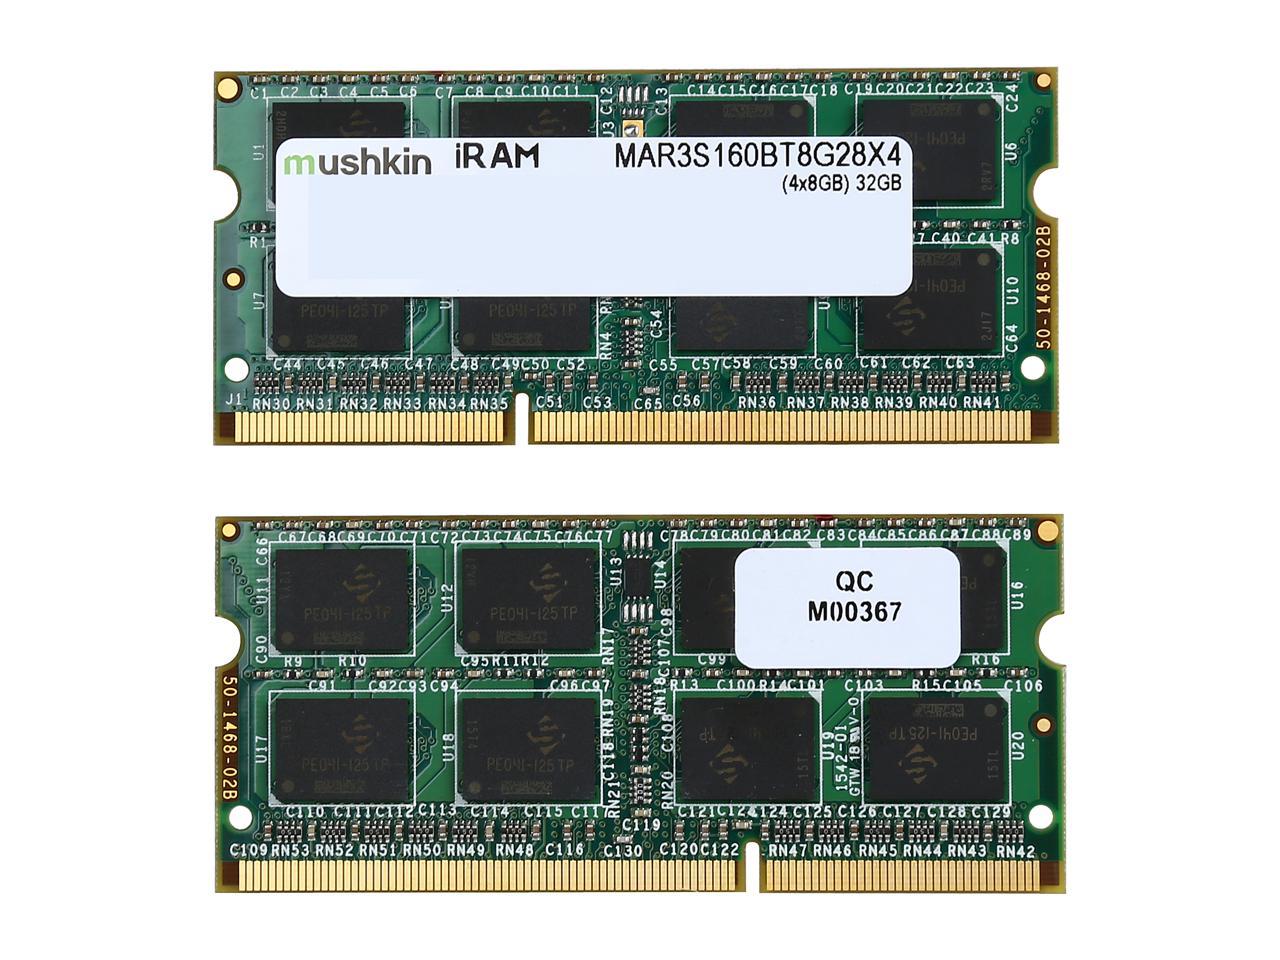 Mushkin iRam 32GB (4 x 8GB) DDR3 1600 (PC3 12800) Memory for Apple Model MAR3S160BT8G28X4